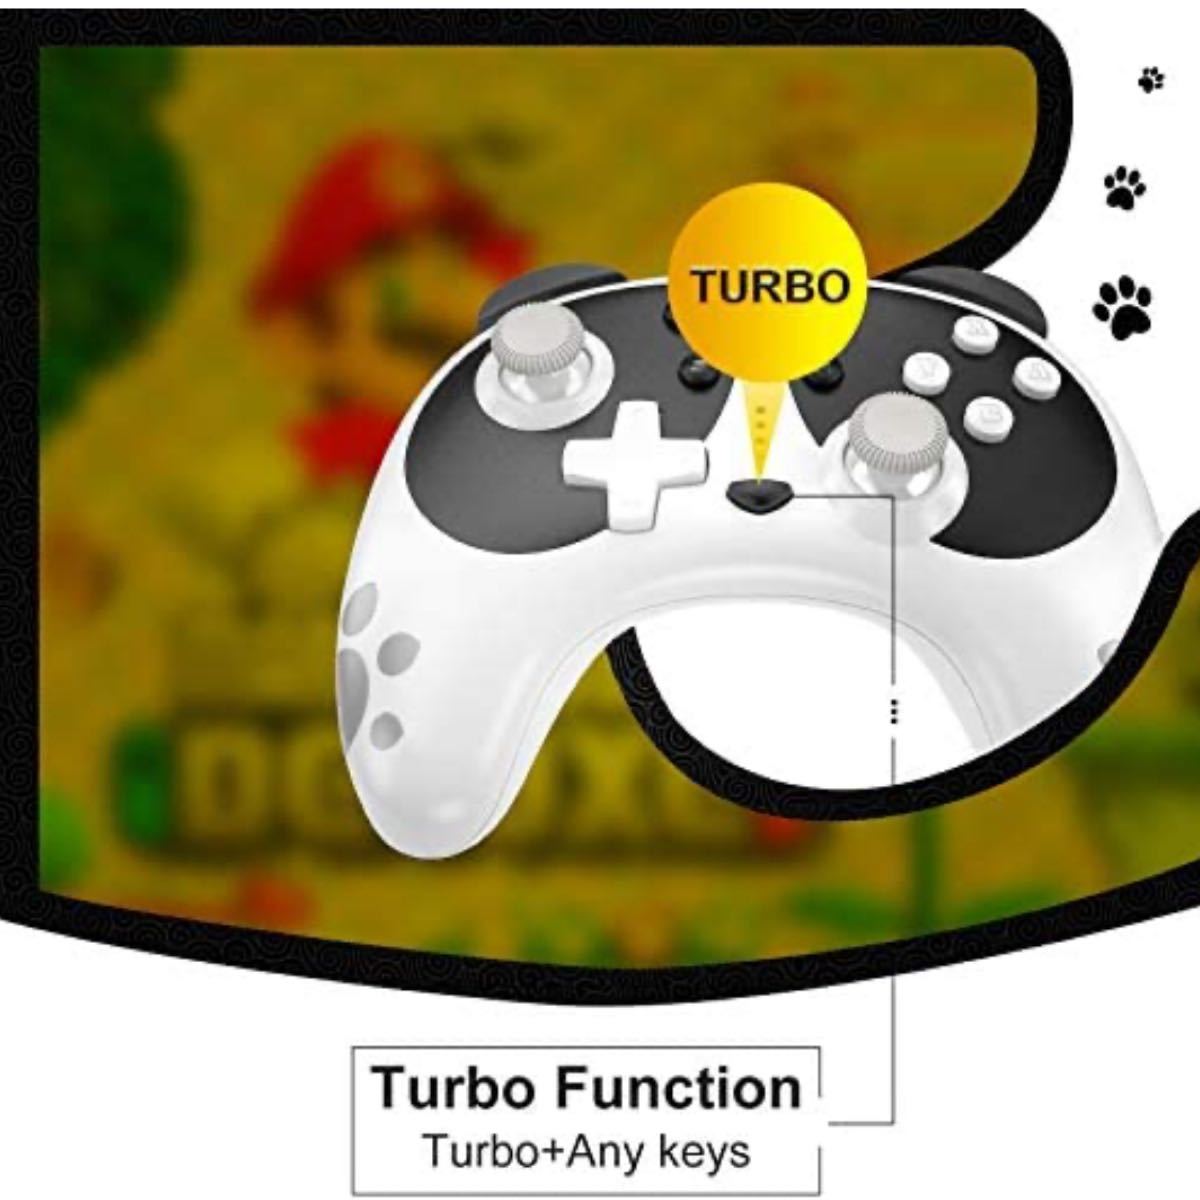 ワイヤレス Pro コントローラー プロコン NFC 6軸ジャイロセンサー搭載 HD振動 TURBO連射